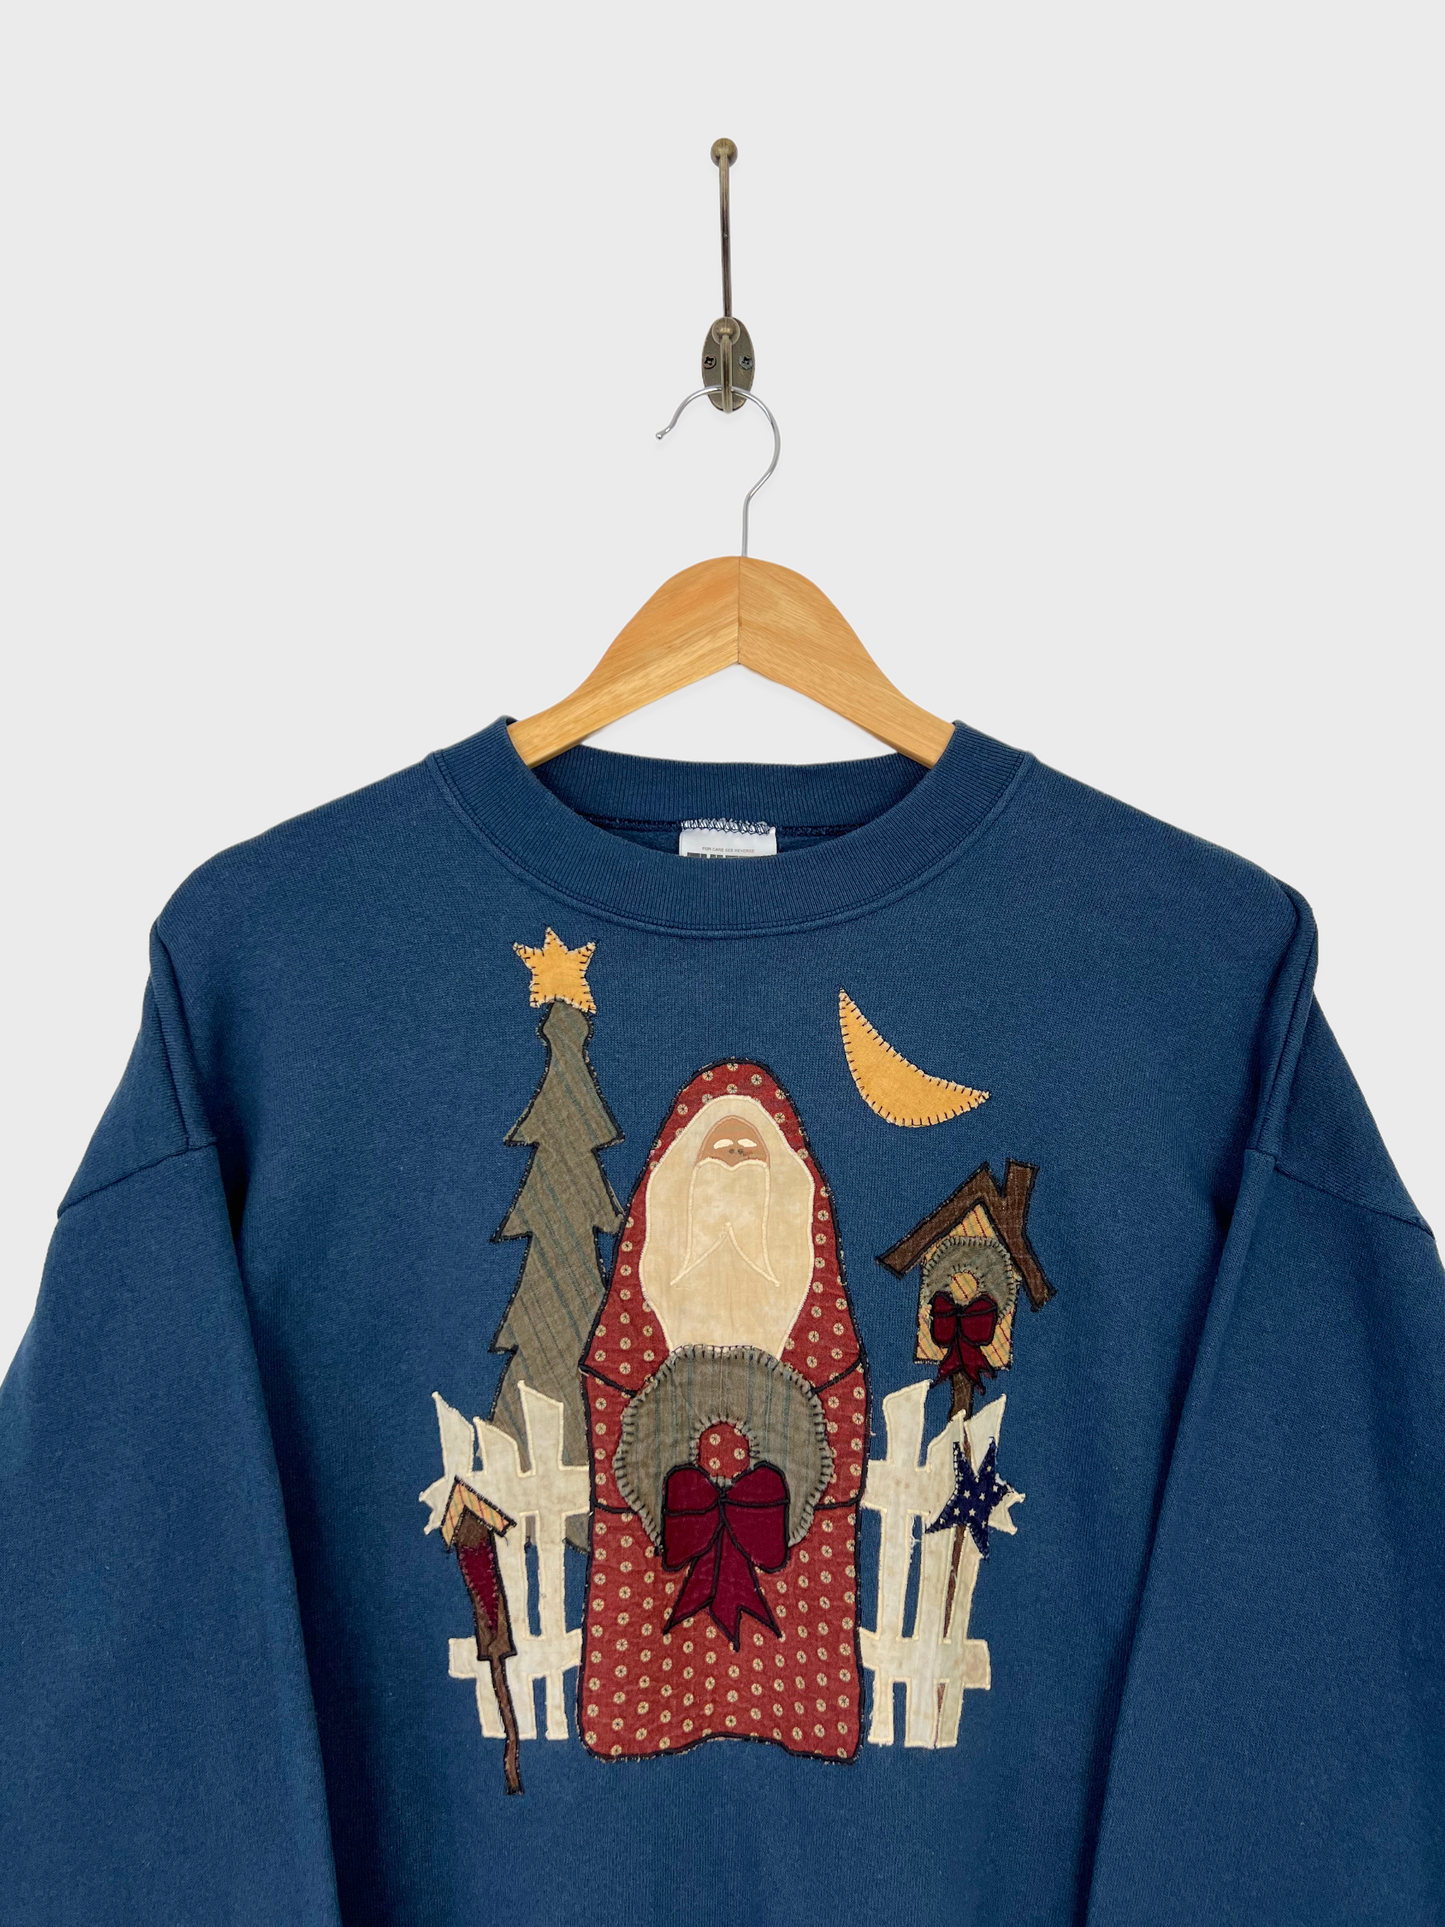 90's Christmas USA Made Embroidered Vintage Sweatshirt Size 10